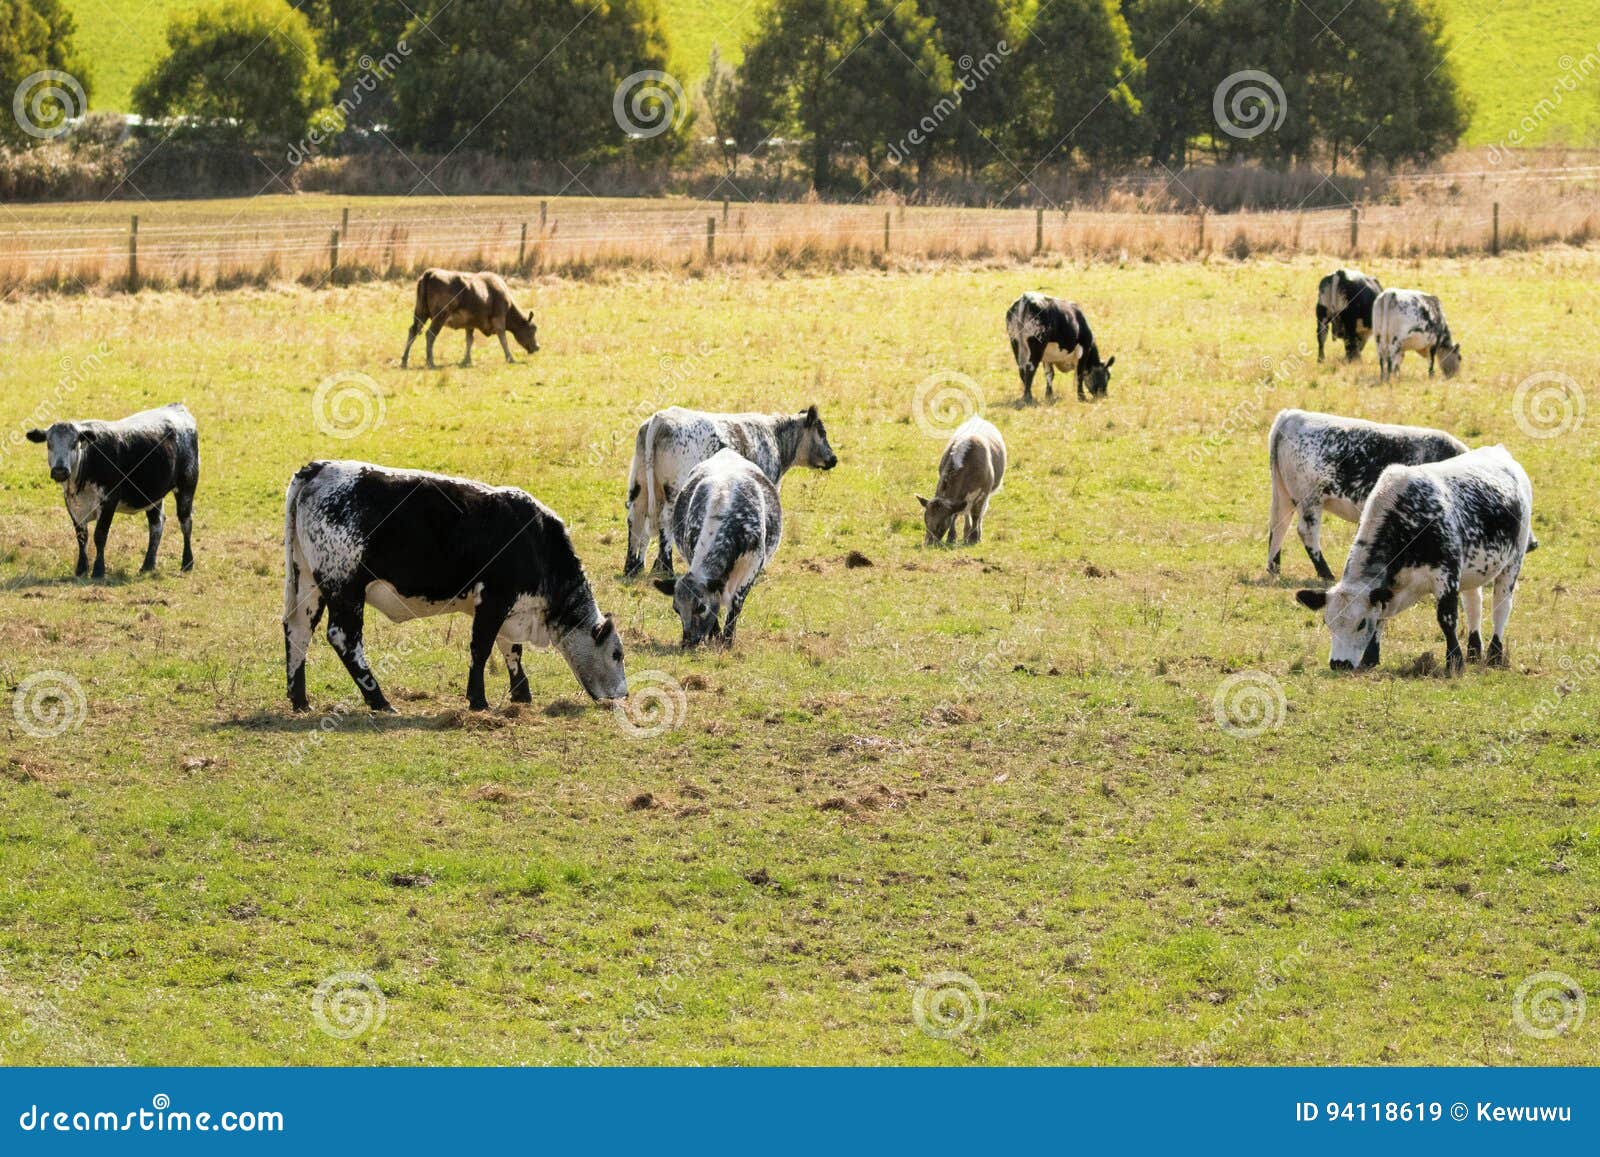 bulls, calves in white streaked with black spot on skin grazing